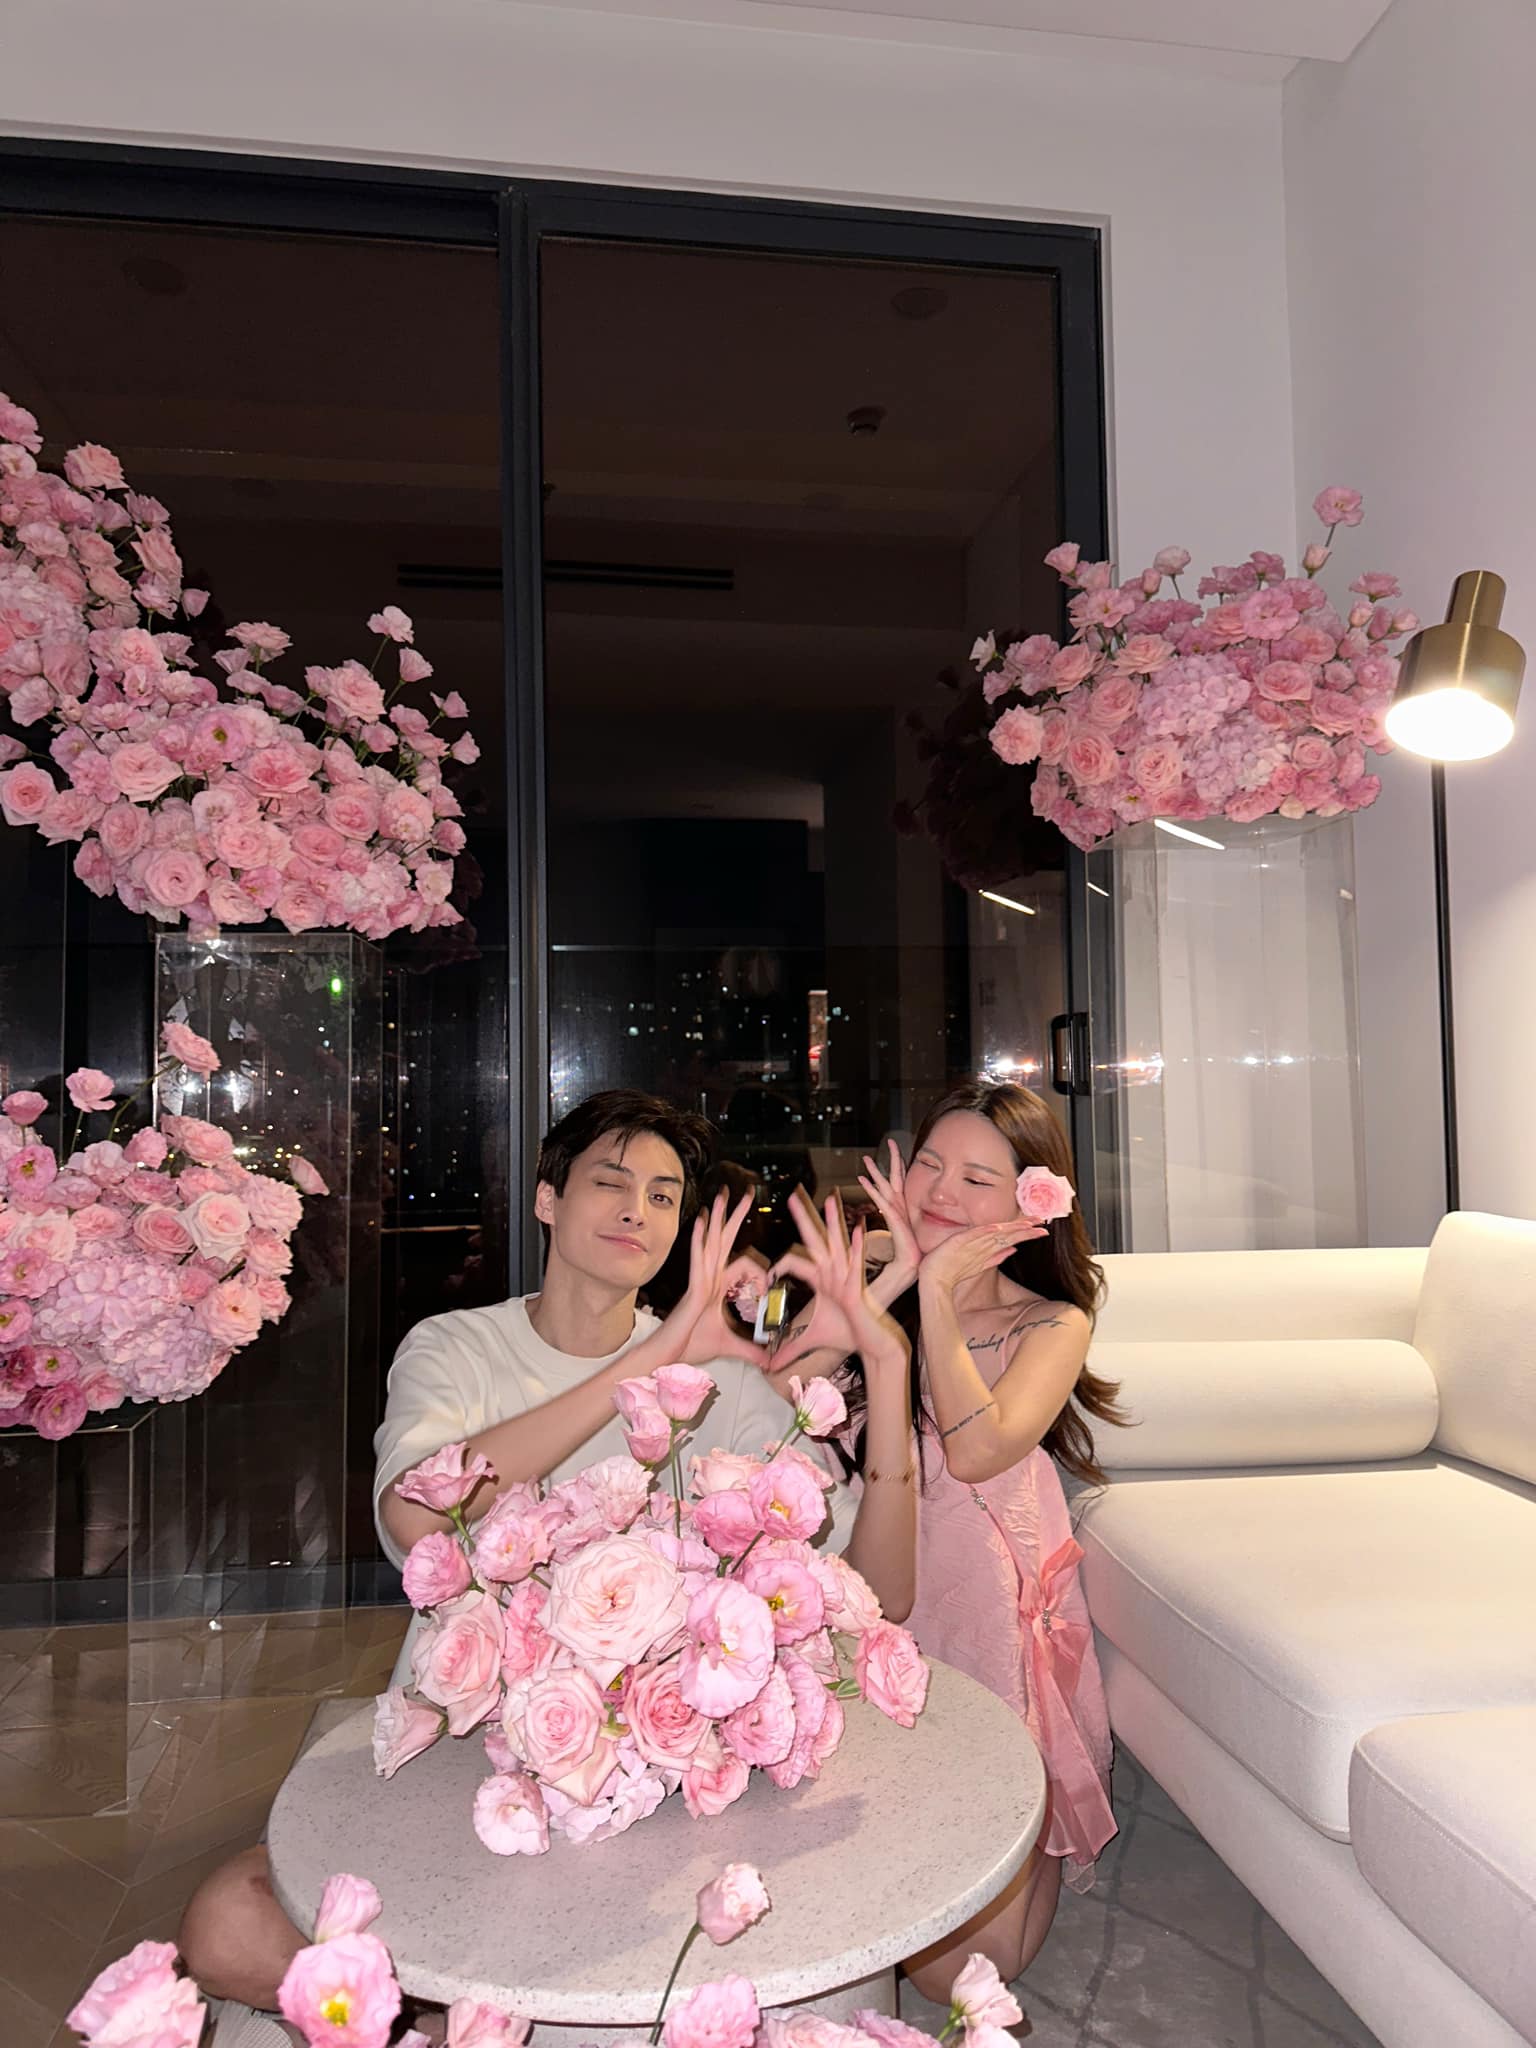 Tuấn Dương mua nhà 7,2 tỷ tặng sinh nhật Lucie Nguyễn, để lộ chuyện chưa đăng ký kết hôn dù đã có con - ảnh 4